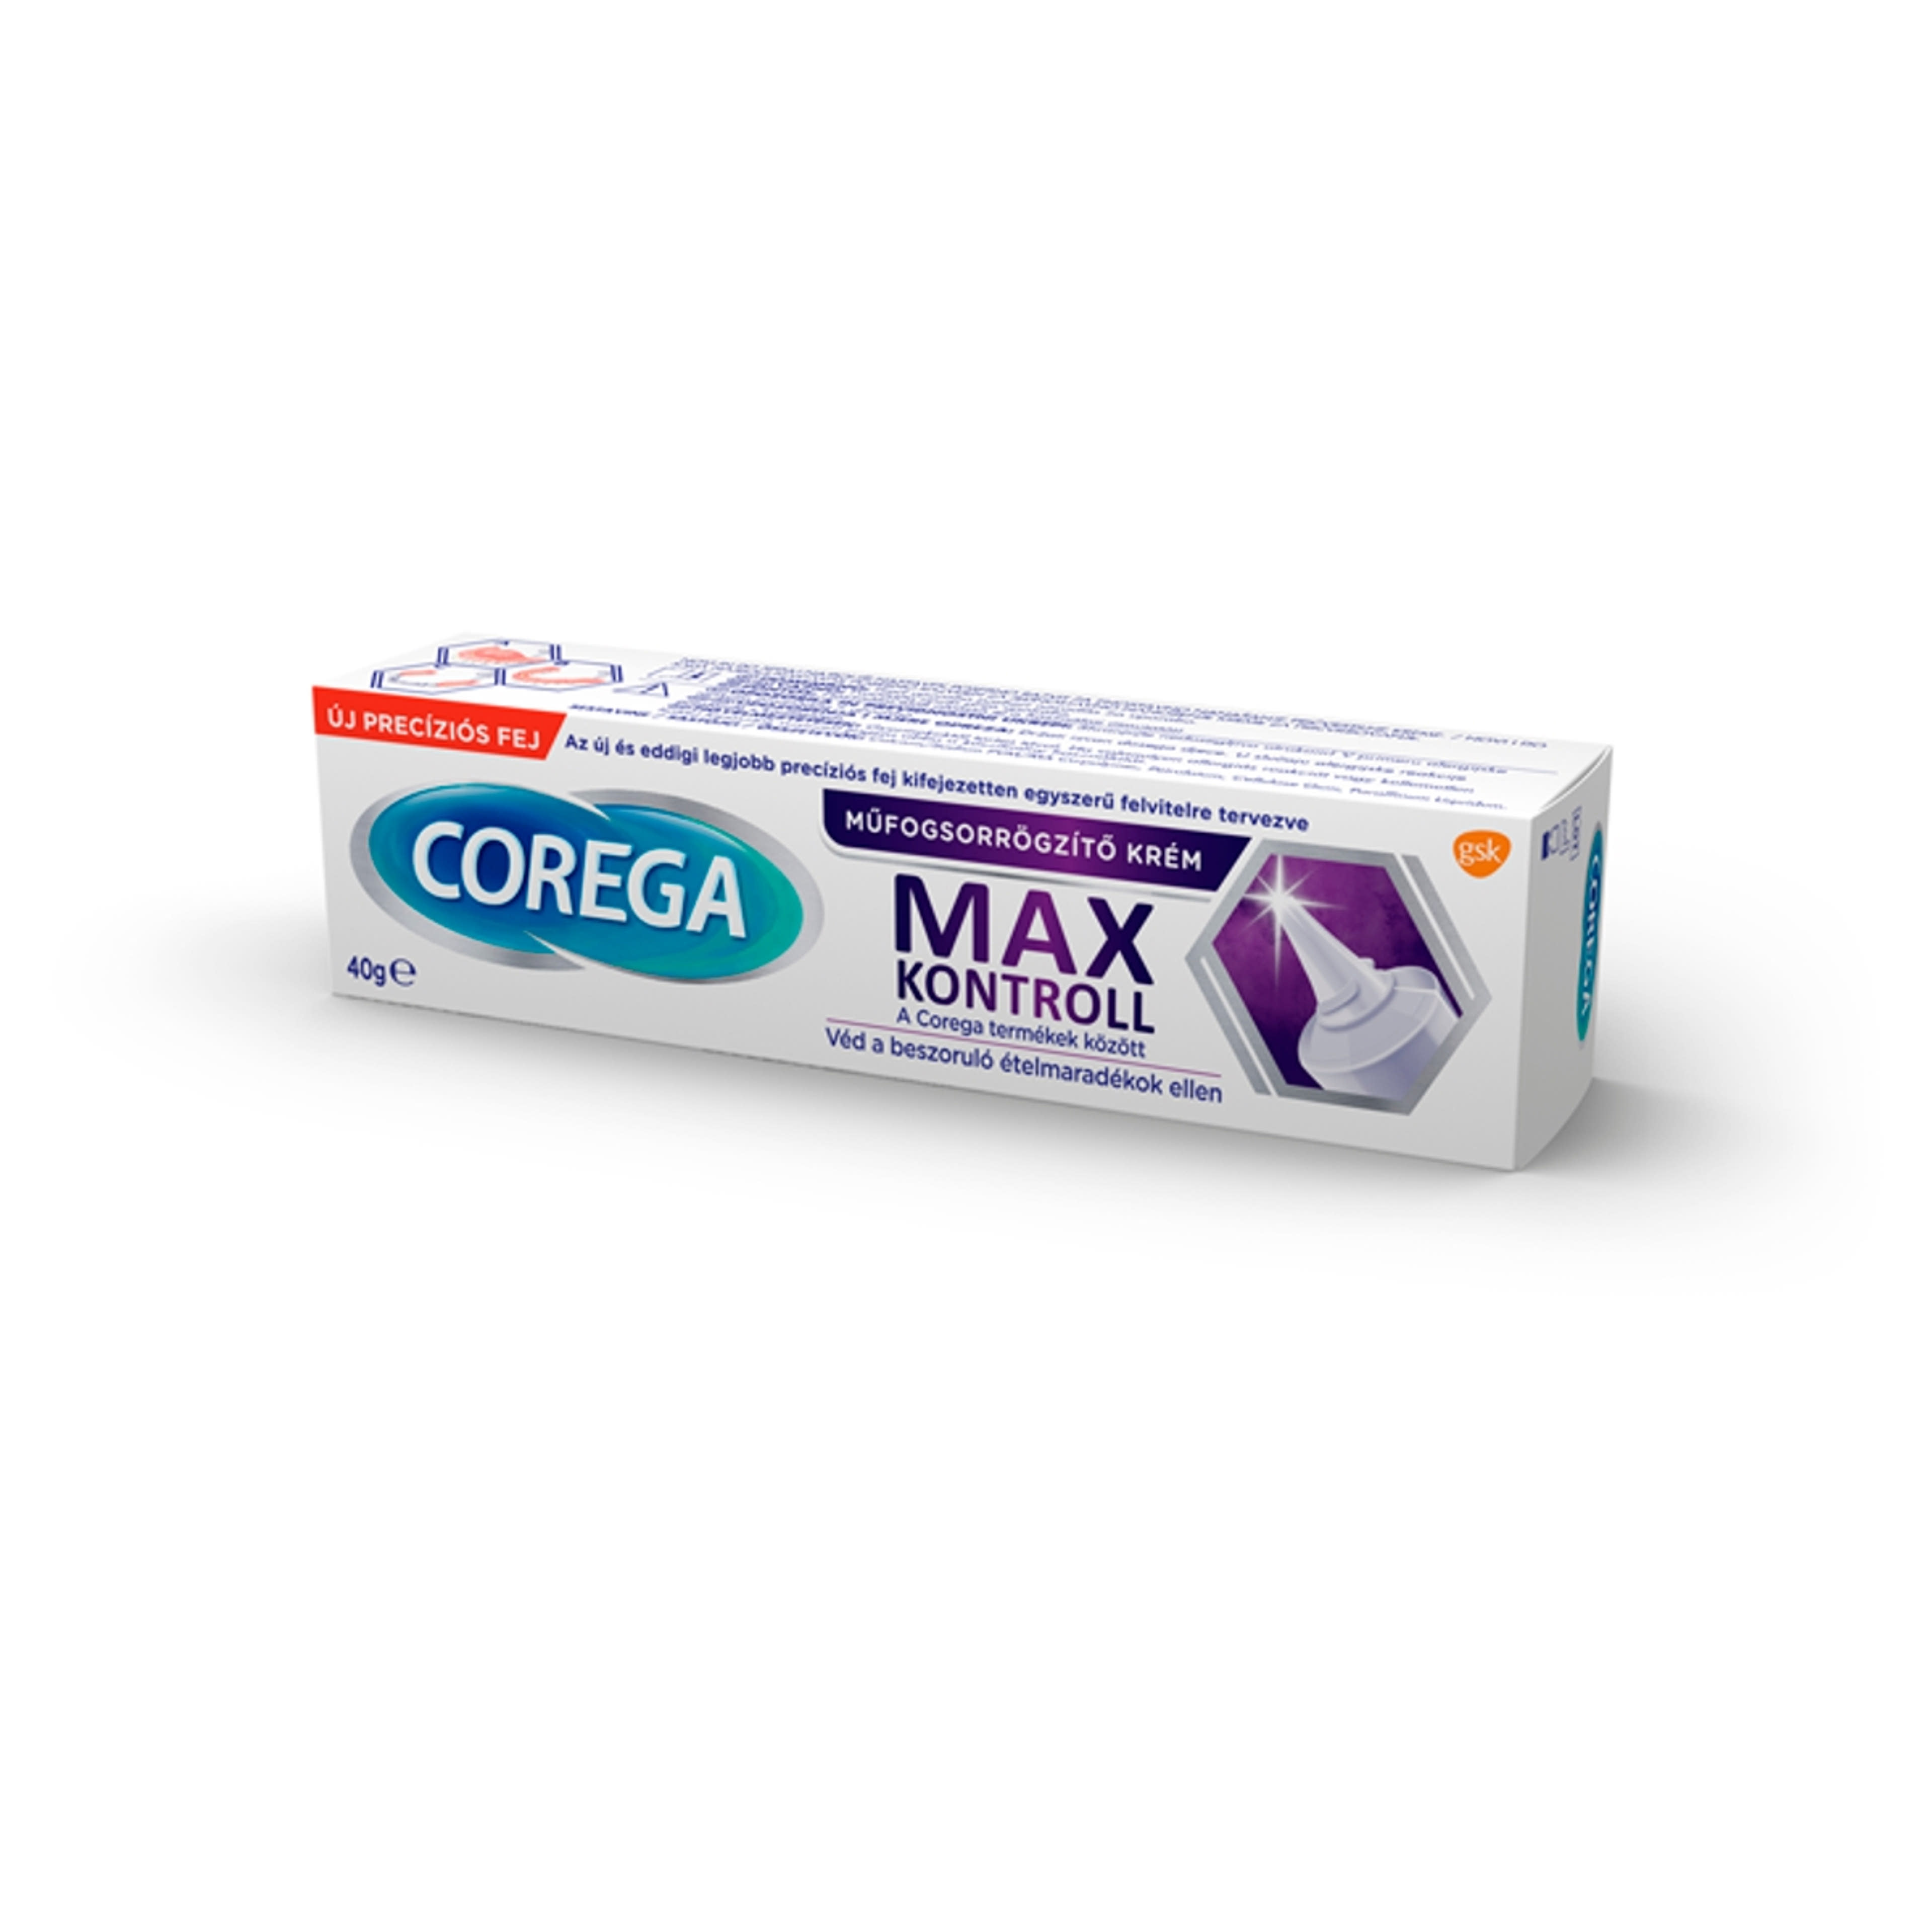 Corega Max Kontroll műfogsorrögzítő krém - 40 g-2